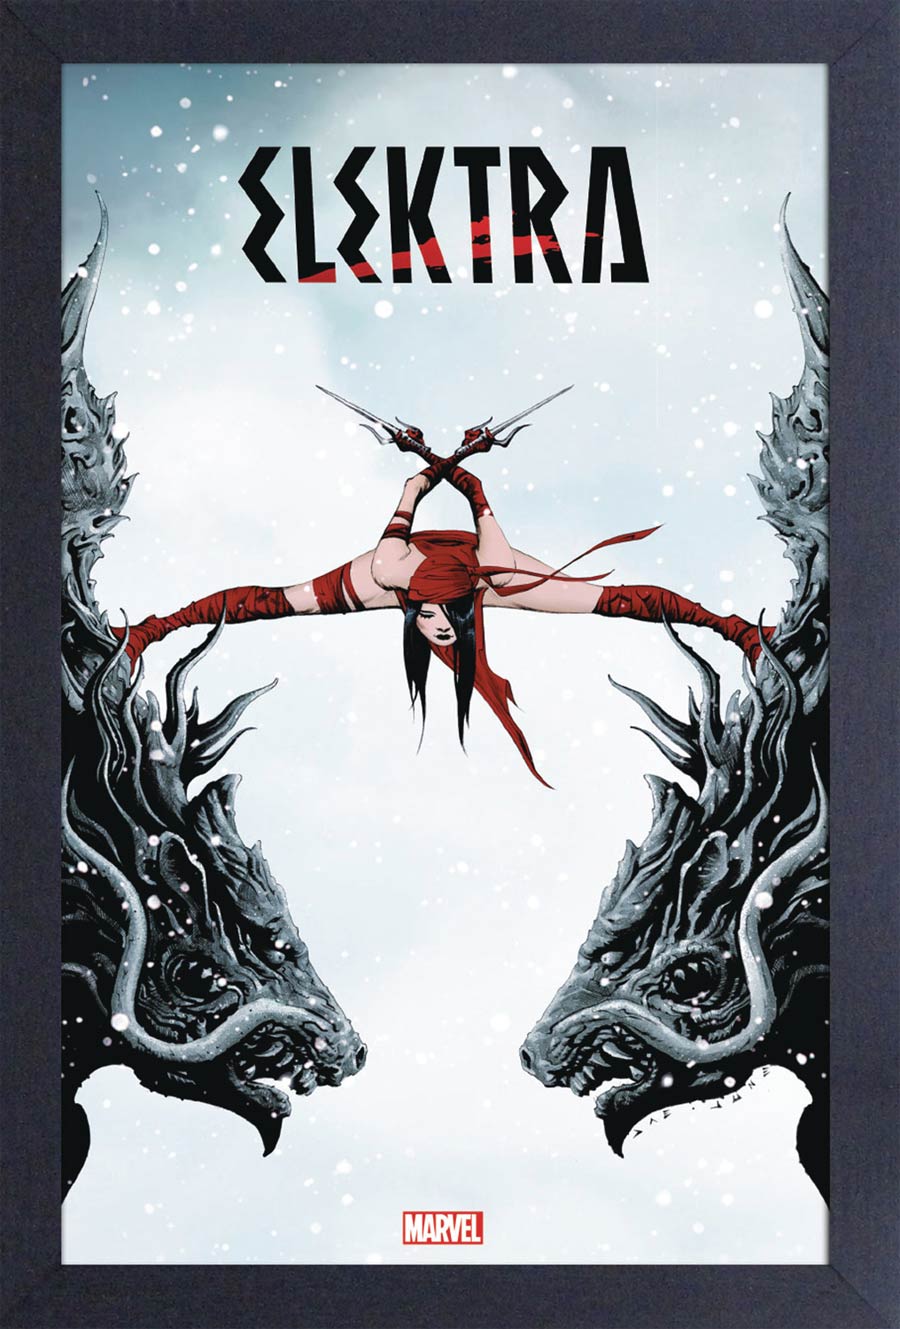 Marvel 11x17 Framed Print - Elektra